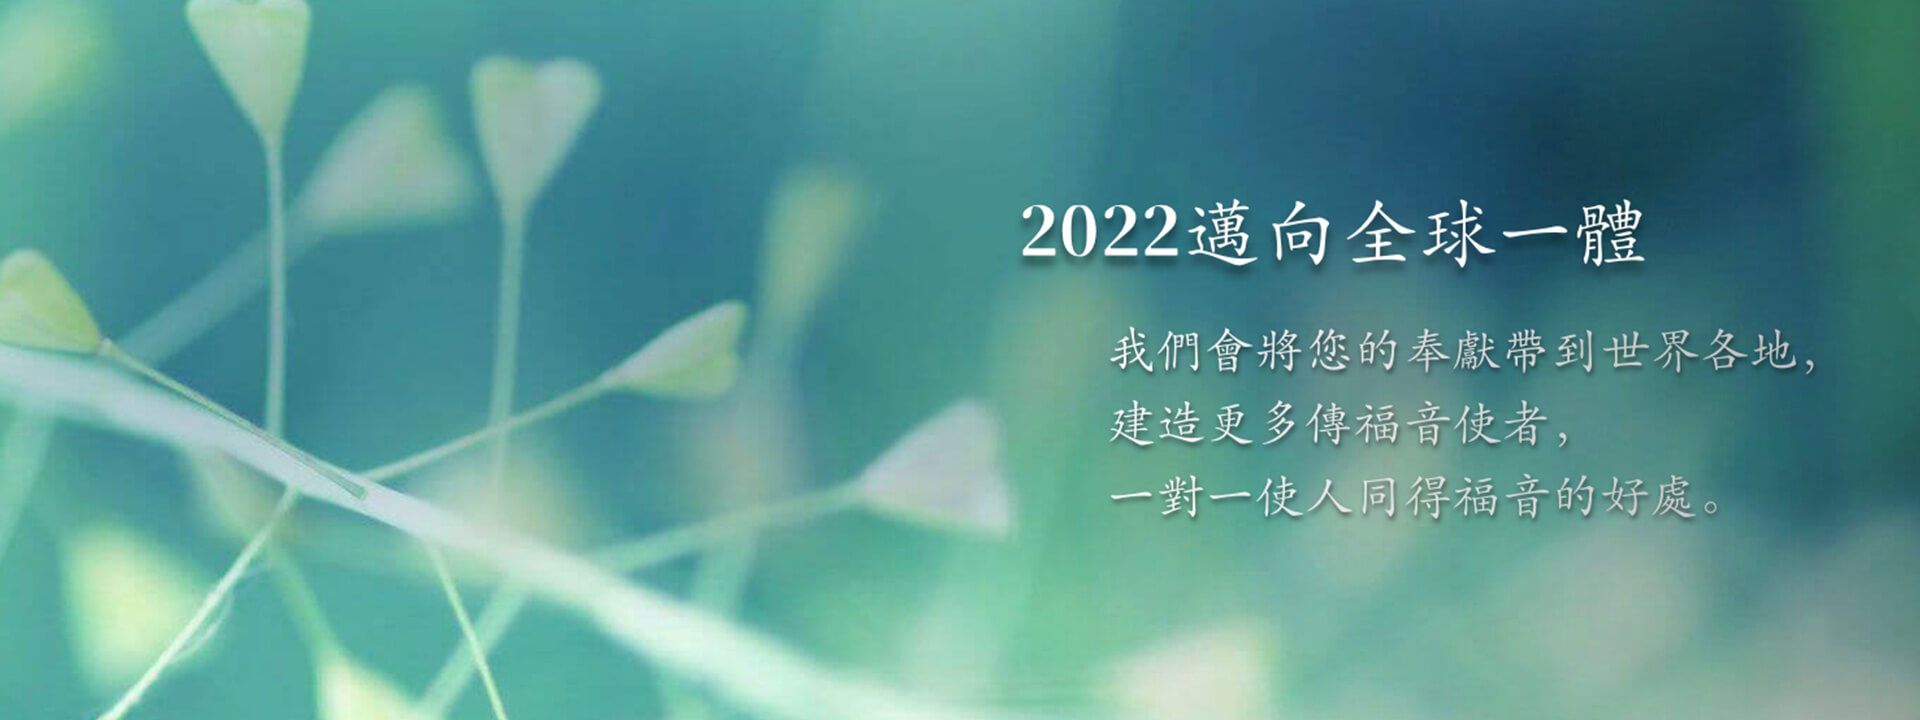 2022邁向全球一體